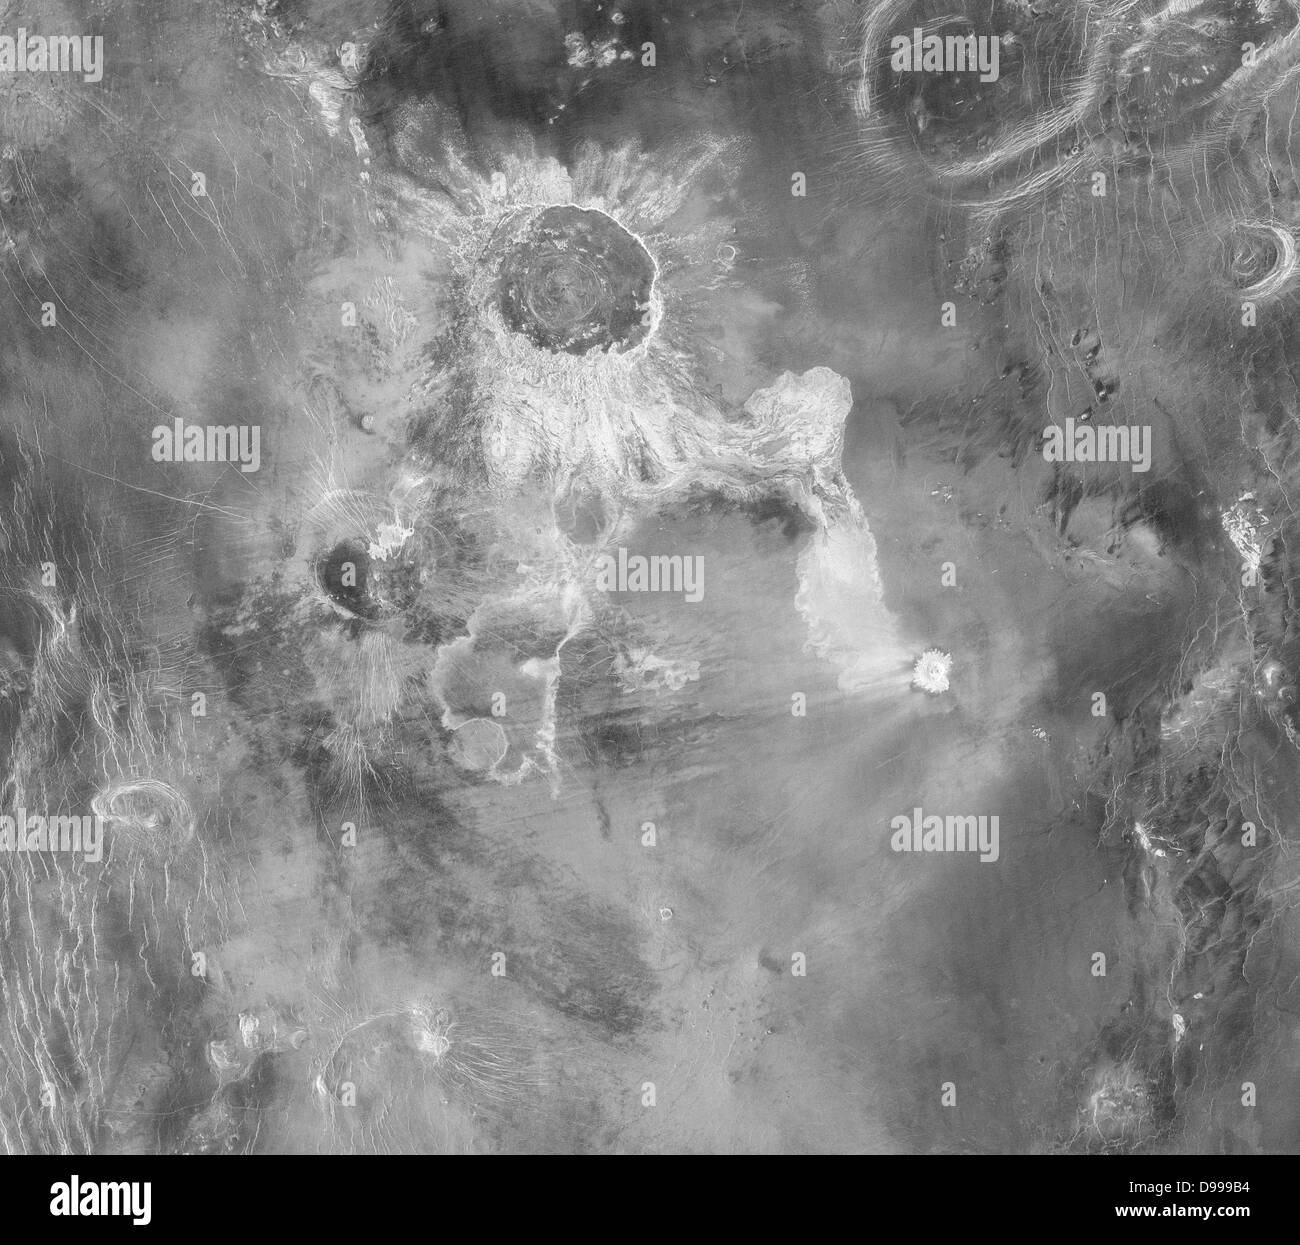 Isabella, Krater mit einem Durchmesser von 175 Kilometern, in diesem Magellan Radar Bild zu sehen, ist der zweitgrösste Krater auf der Venus. Stockfoto